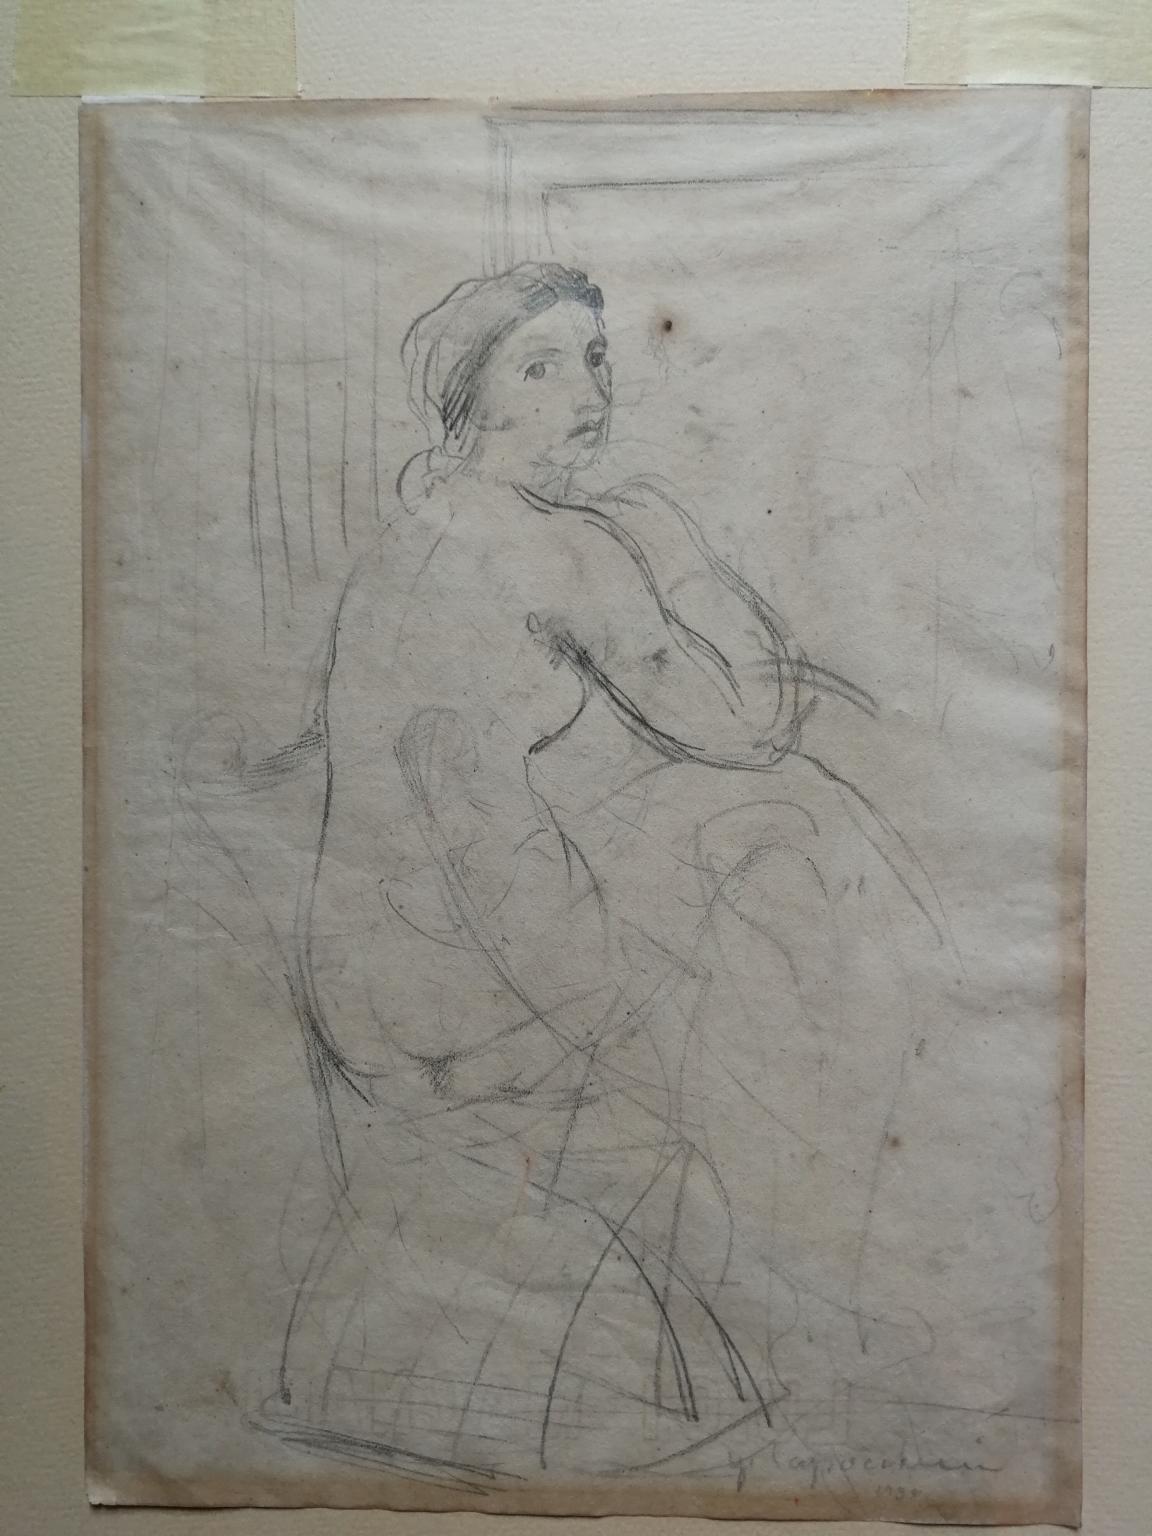 Nude Ugo Capocchini - Disegno fronte retro figurativo toscano nudo femminile del XX secolo